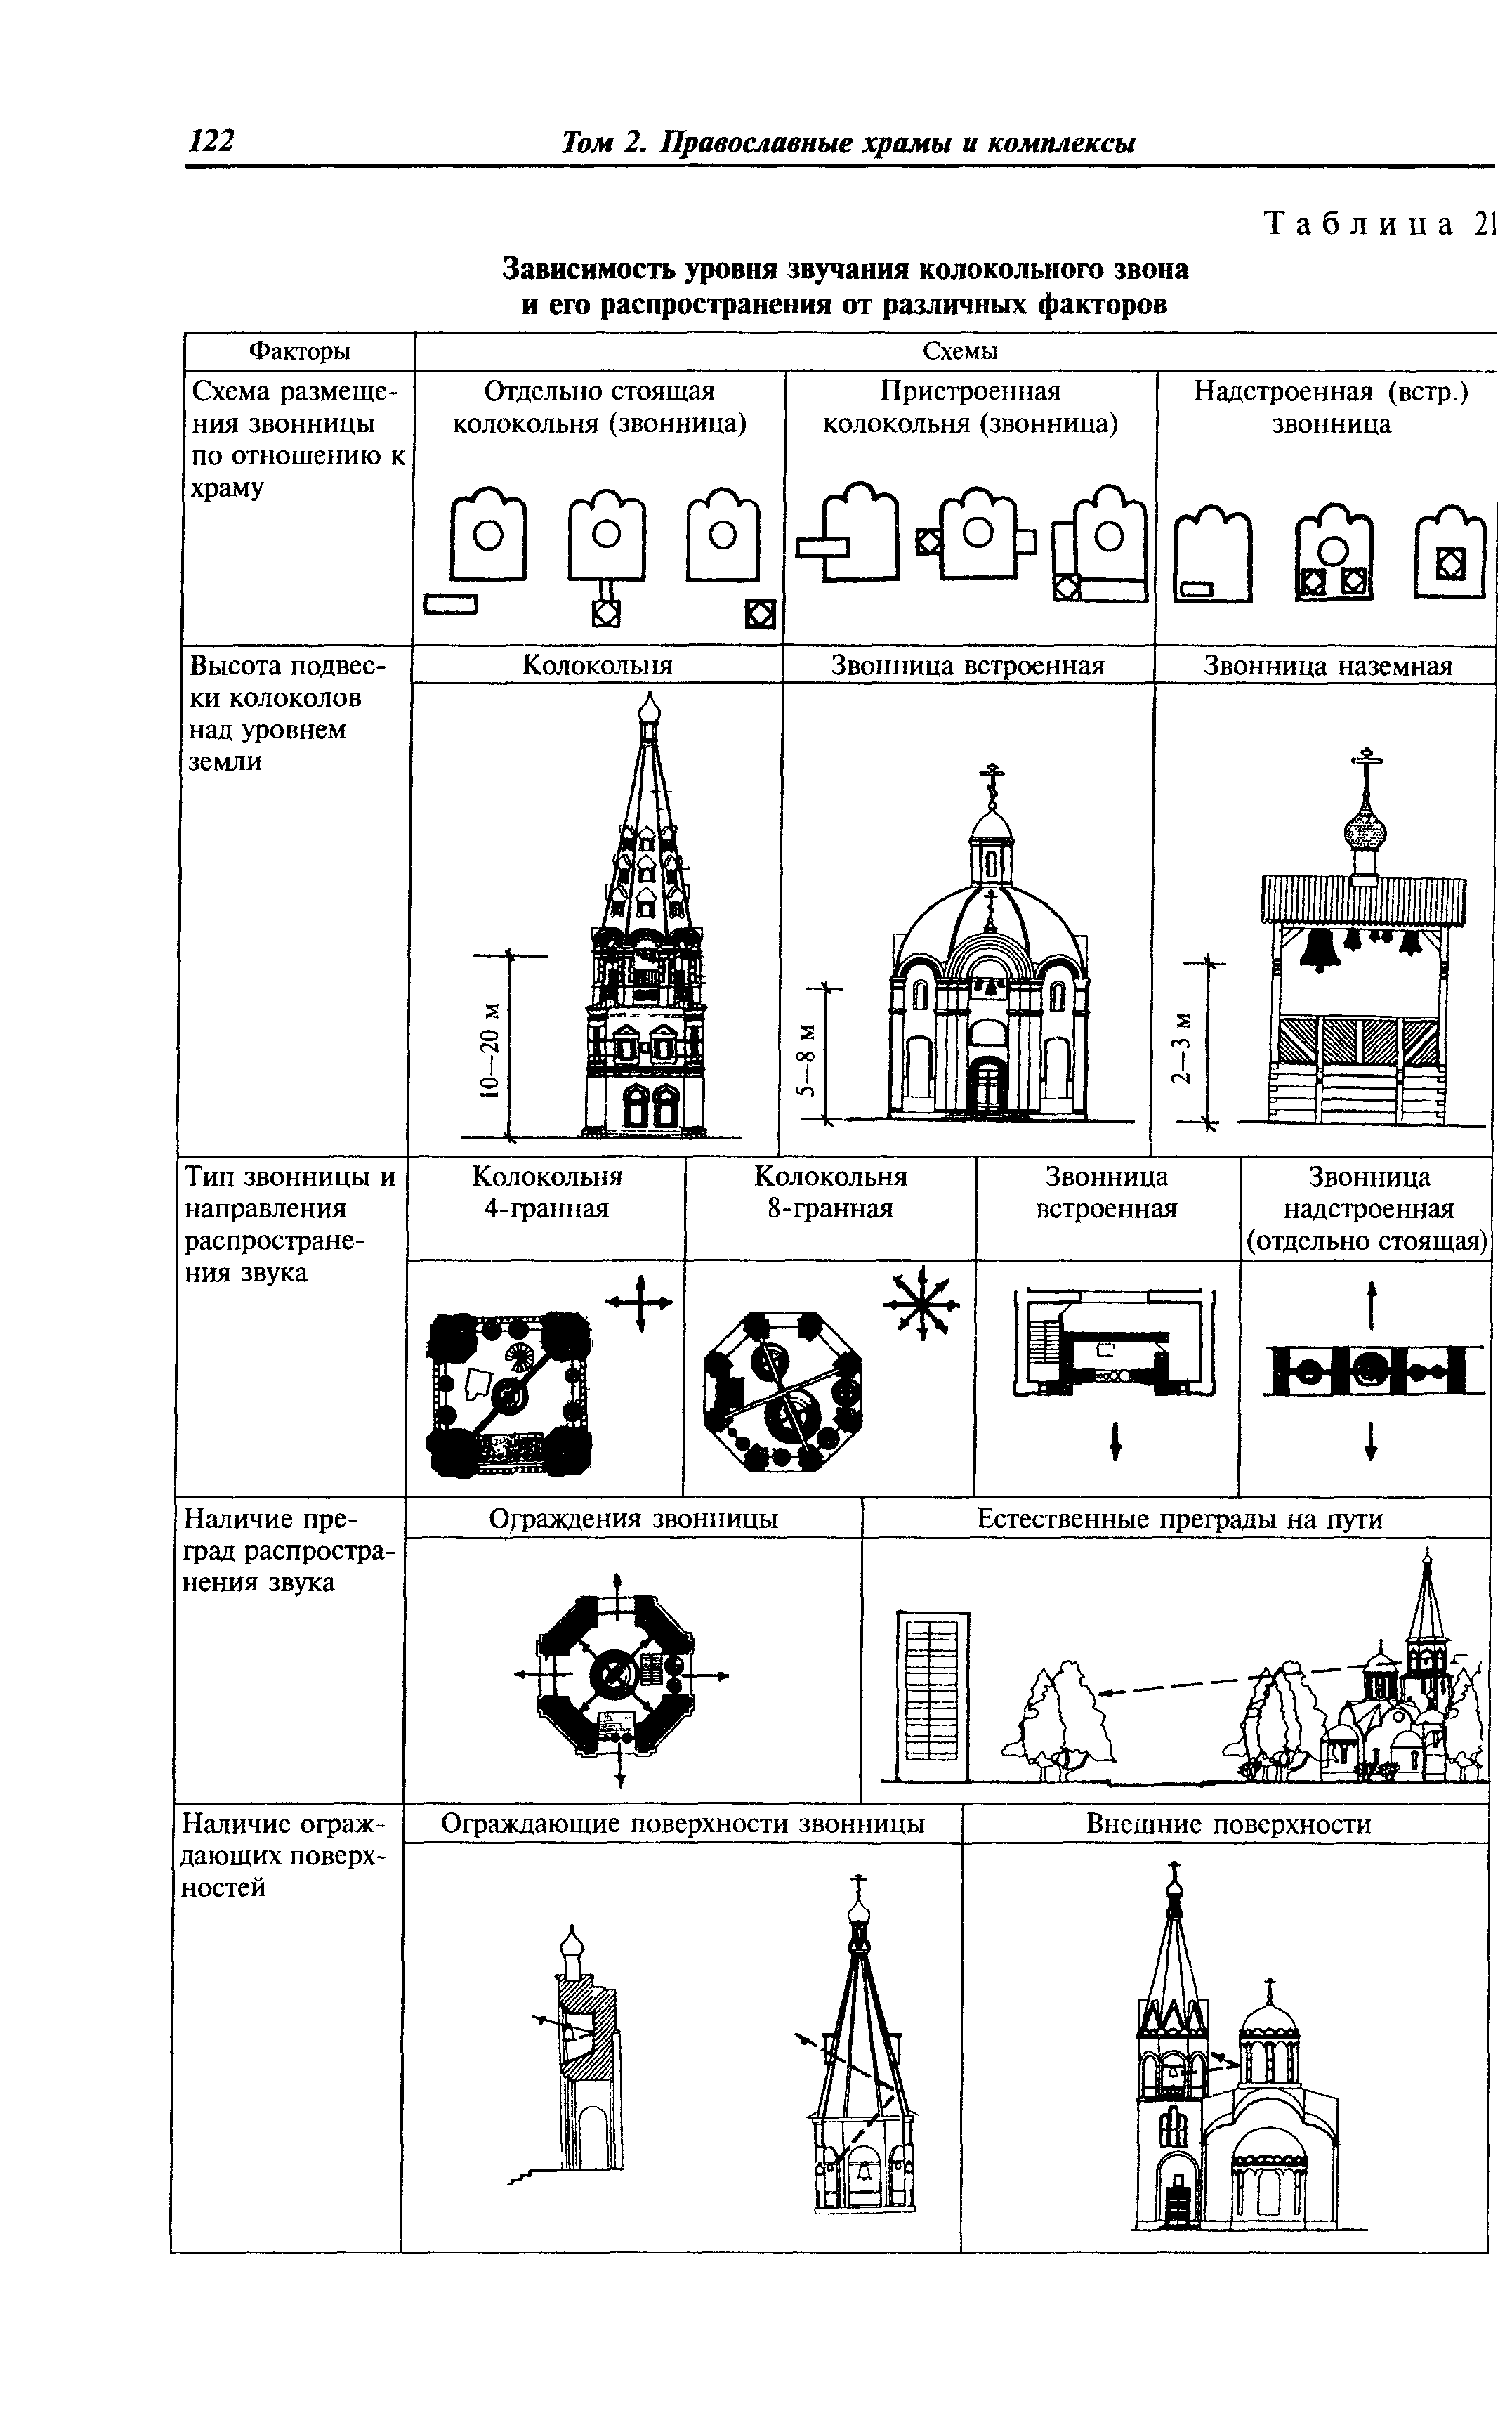 Форма православного храма